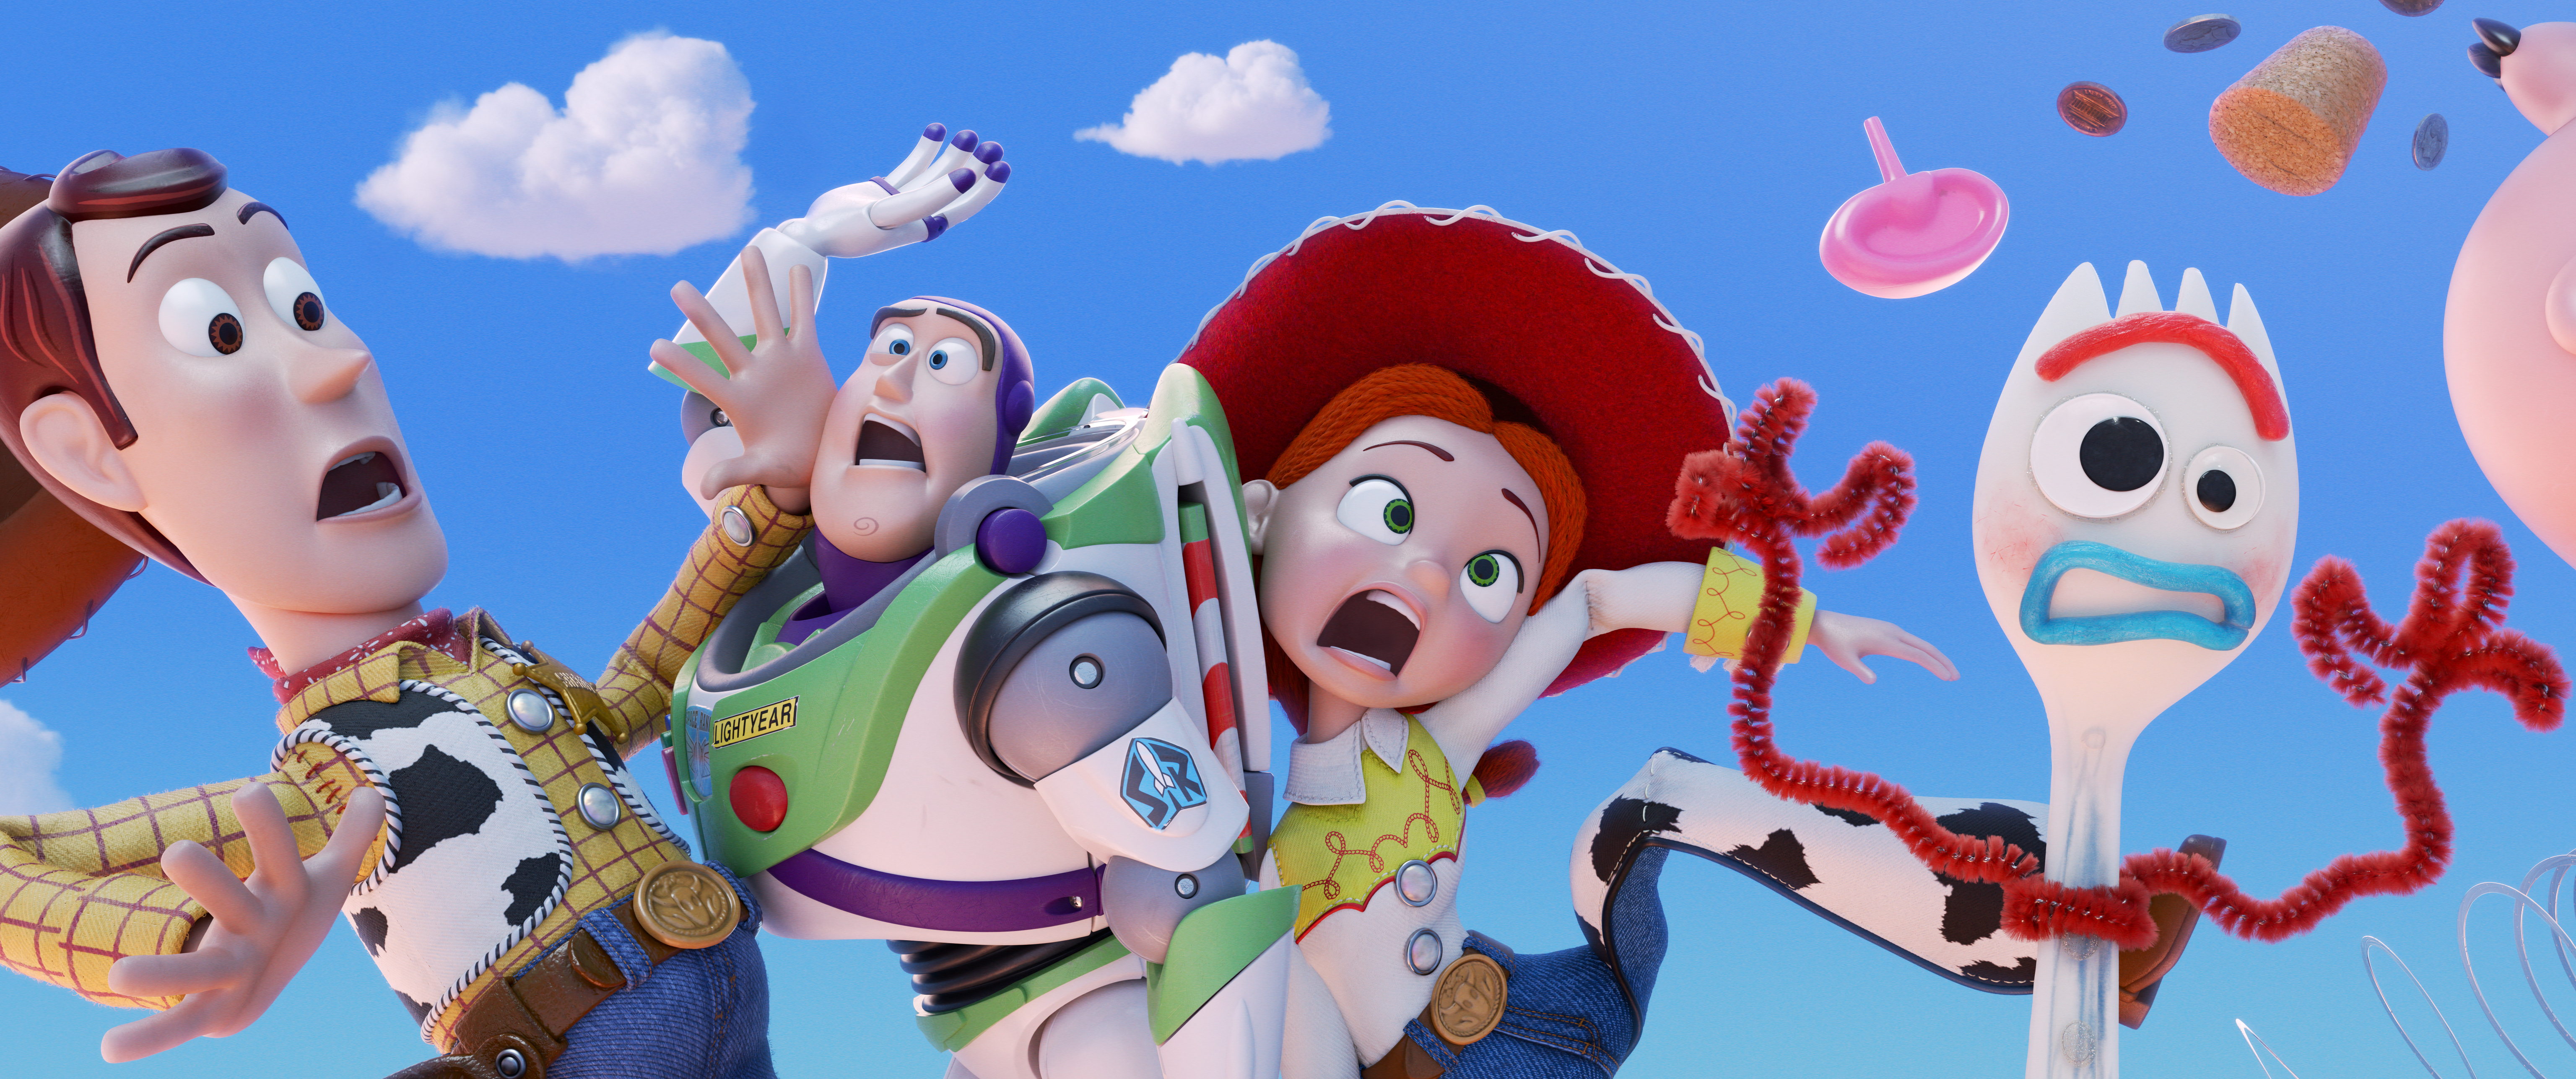 Buzz Lightyear Forky Toy Story Jessie Toy Story Toy Story 4 Woody Toy Story 6144x2574